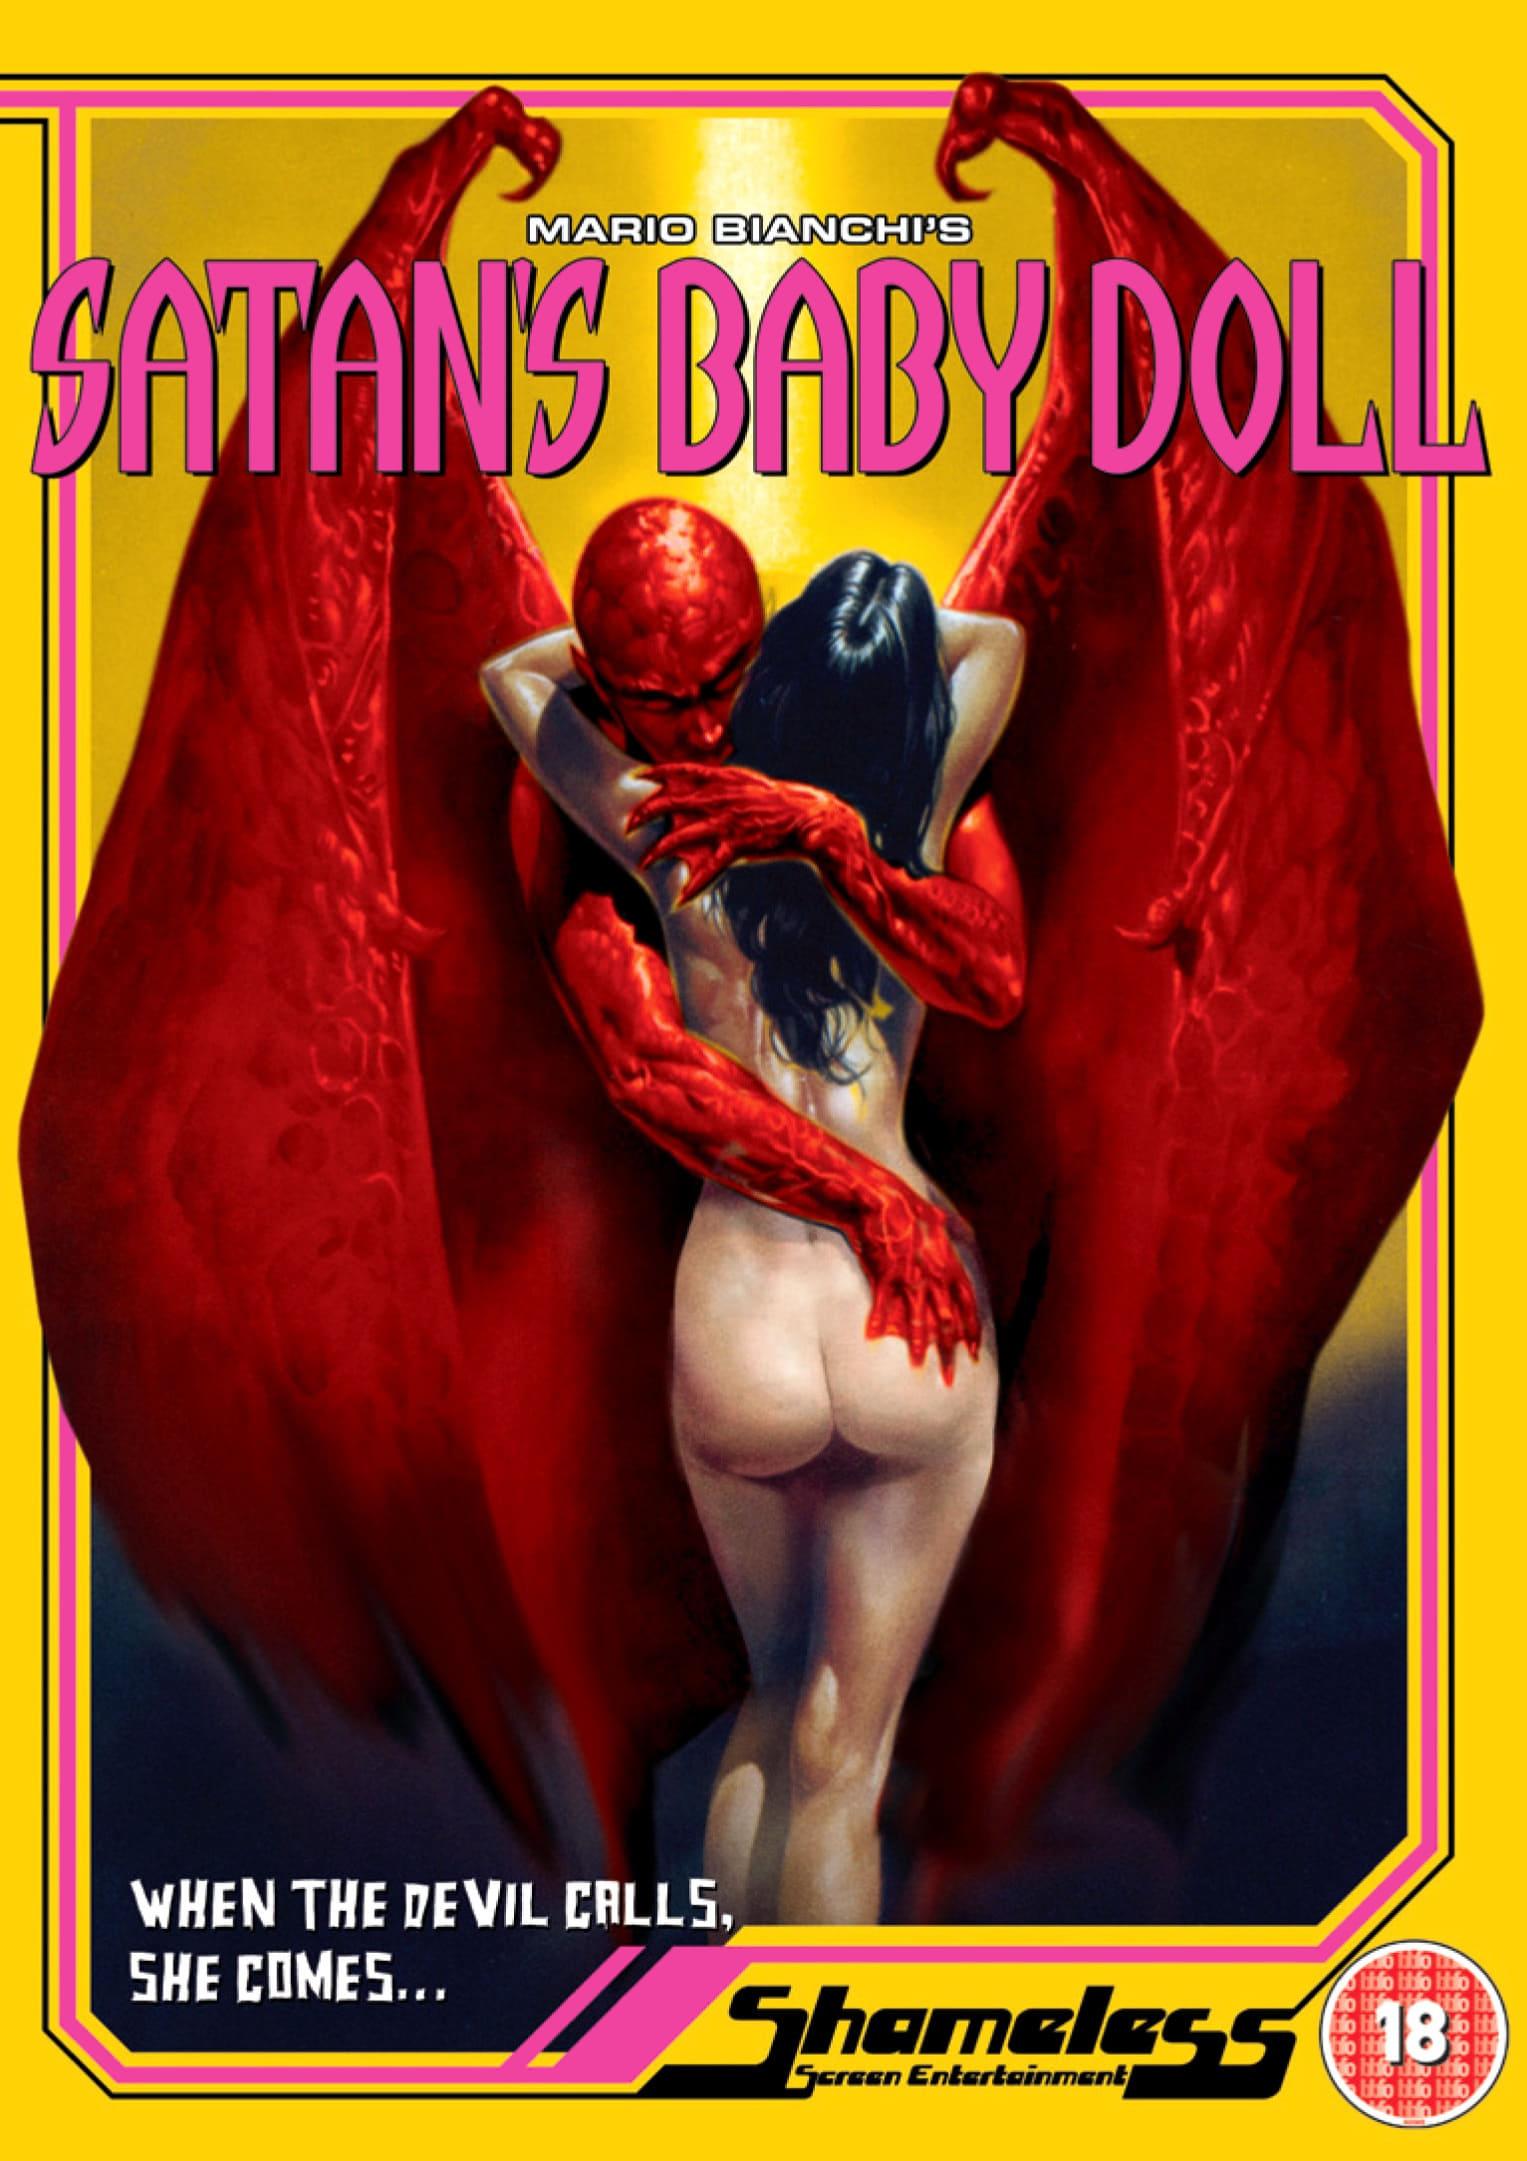 Satan's Baby Doll poster